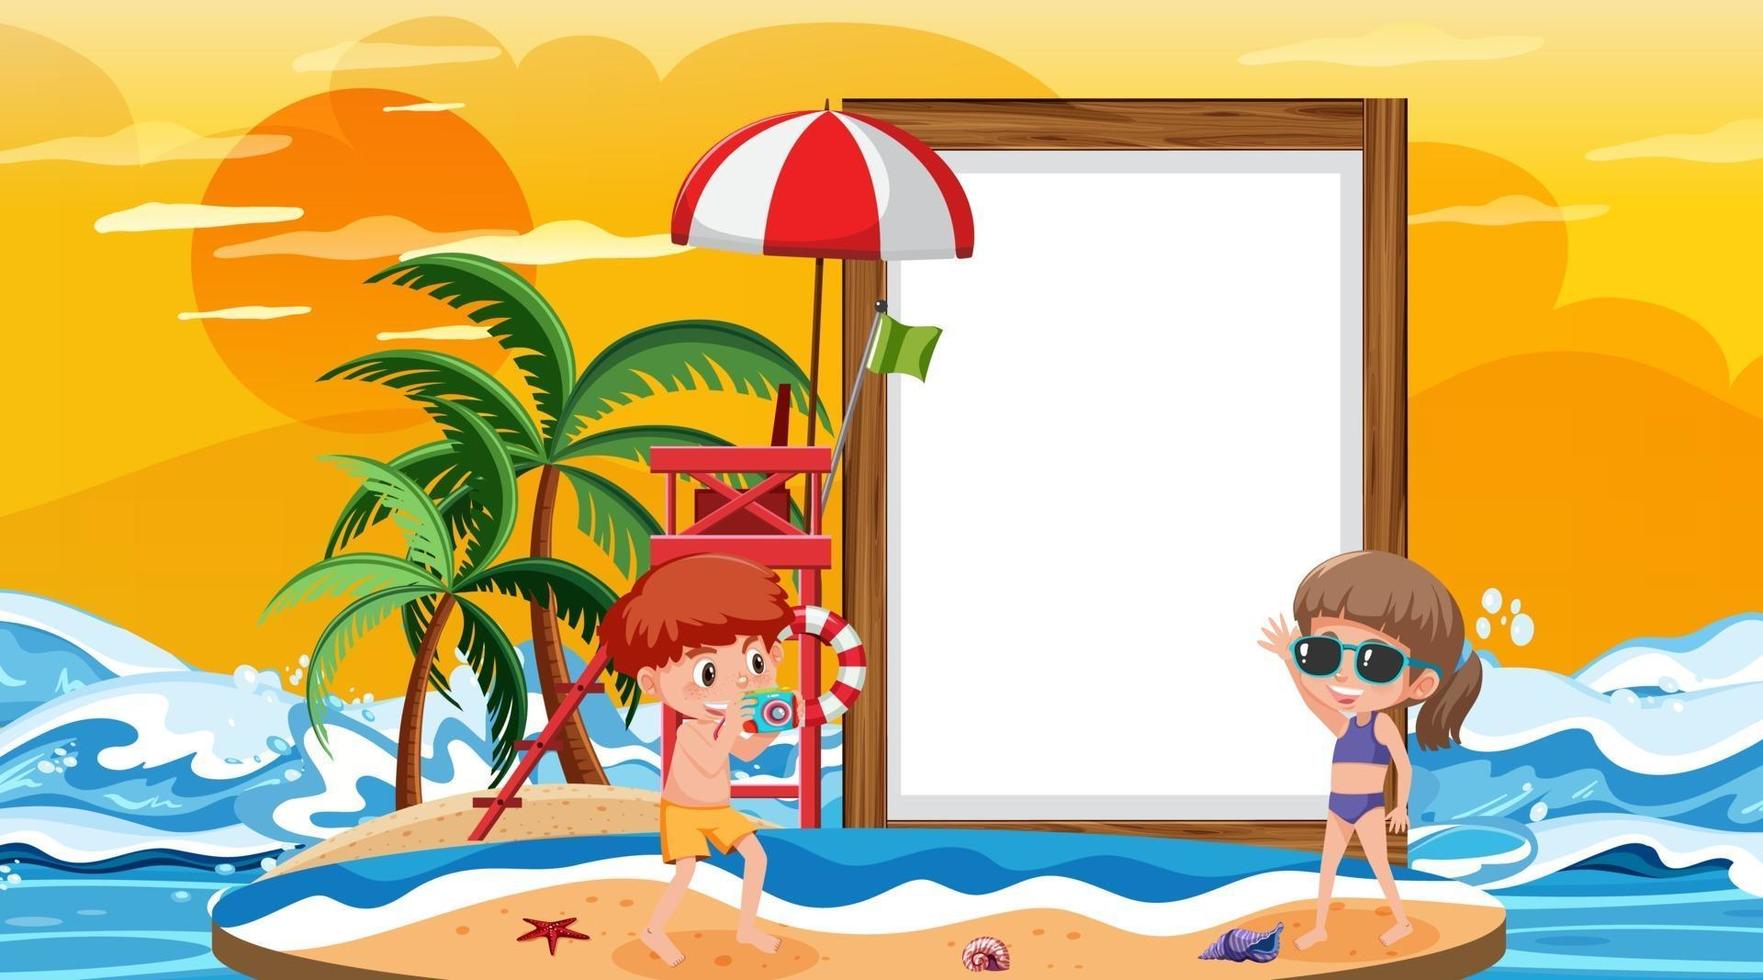 Tom banner mall med barn på semester på stranden solnedgång scen vektor